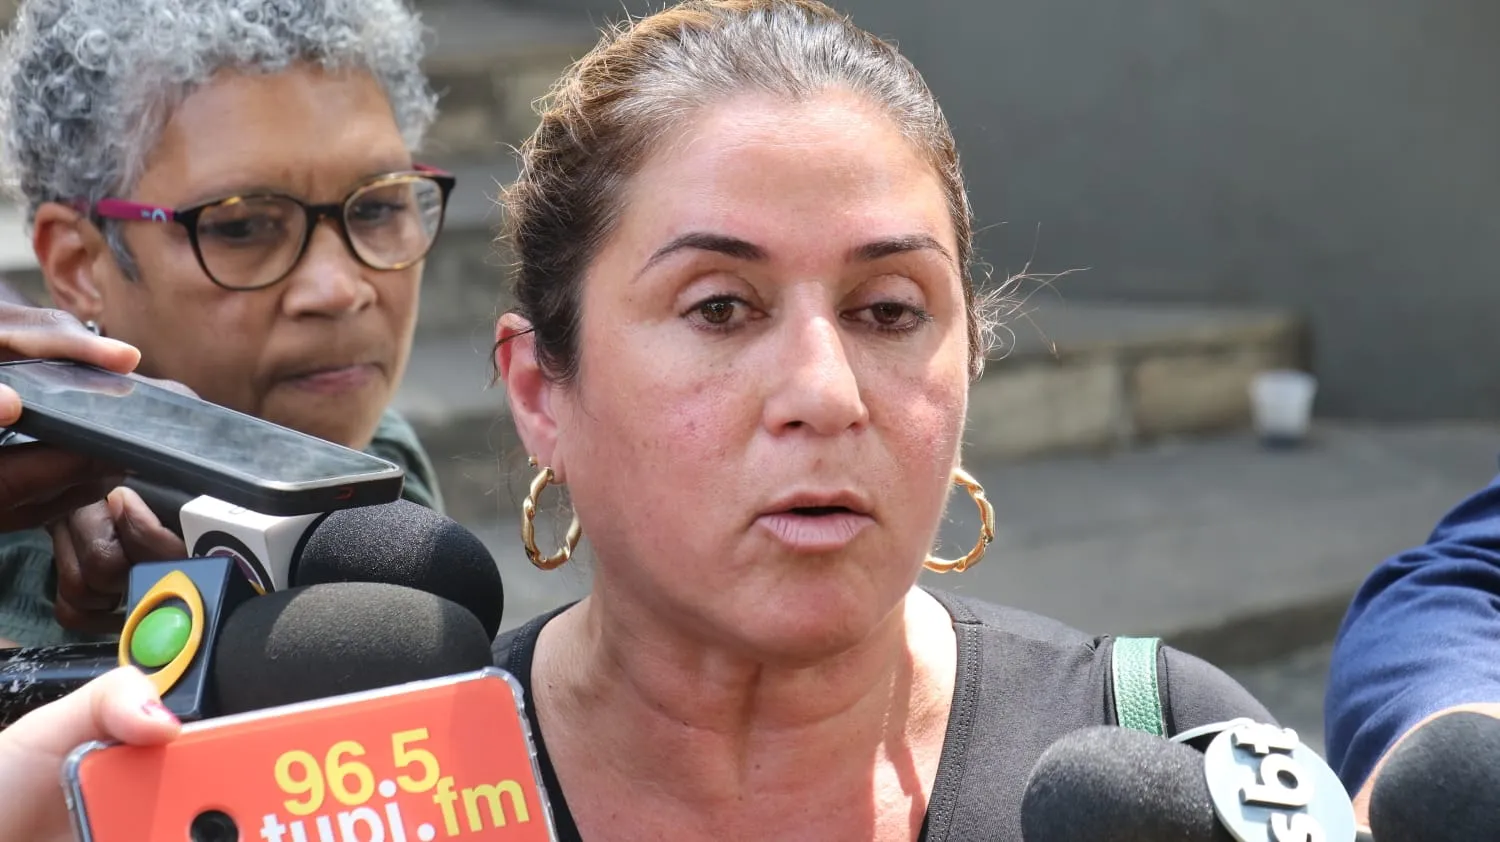 Adriana Galucio cita perseguição política contra ex-chefe da delegacia de homicídios